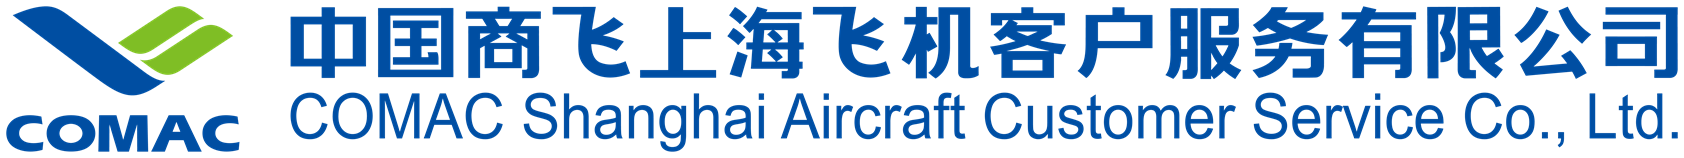 中國商飛上海飛機客戶服務有限公司-04.png